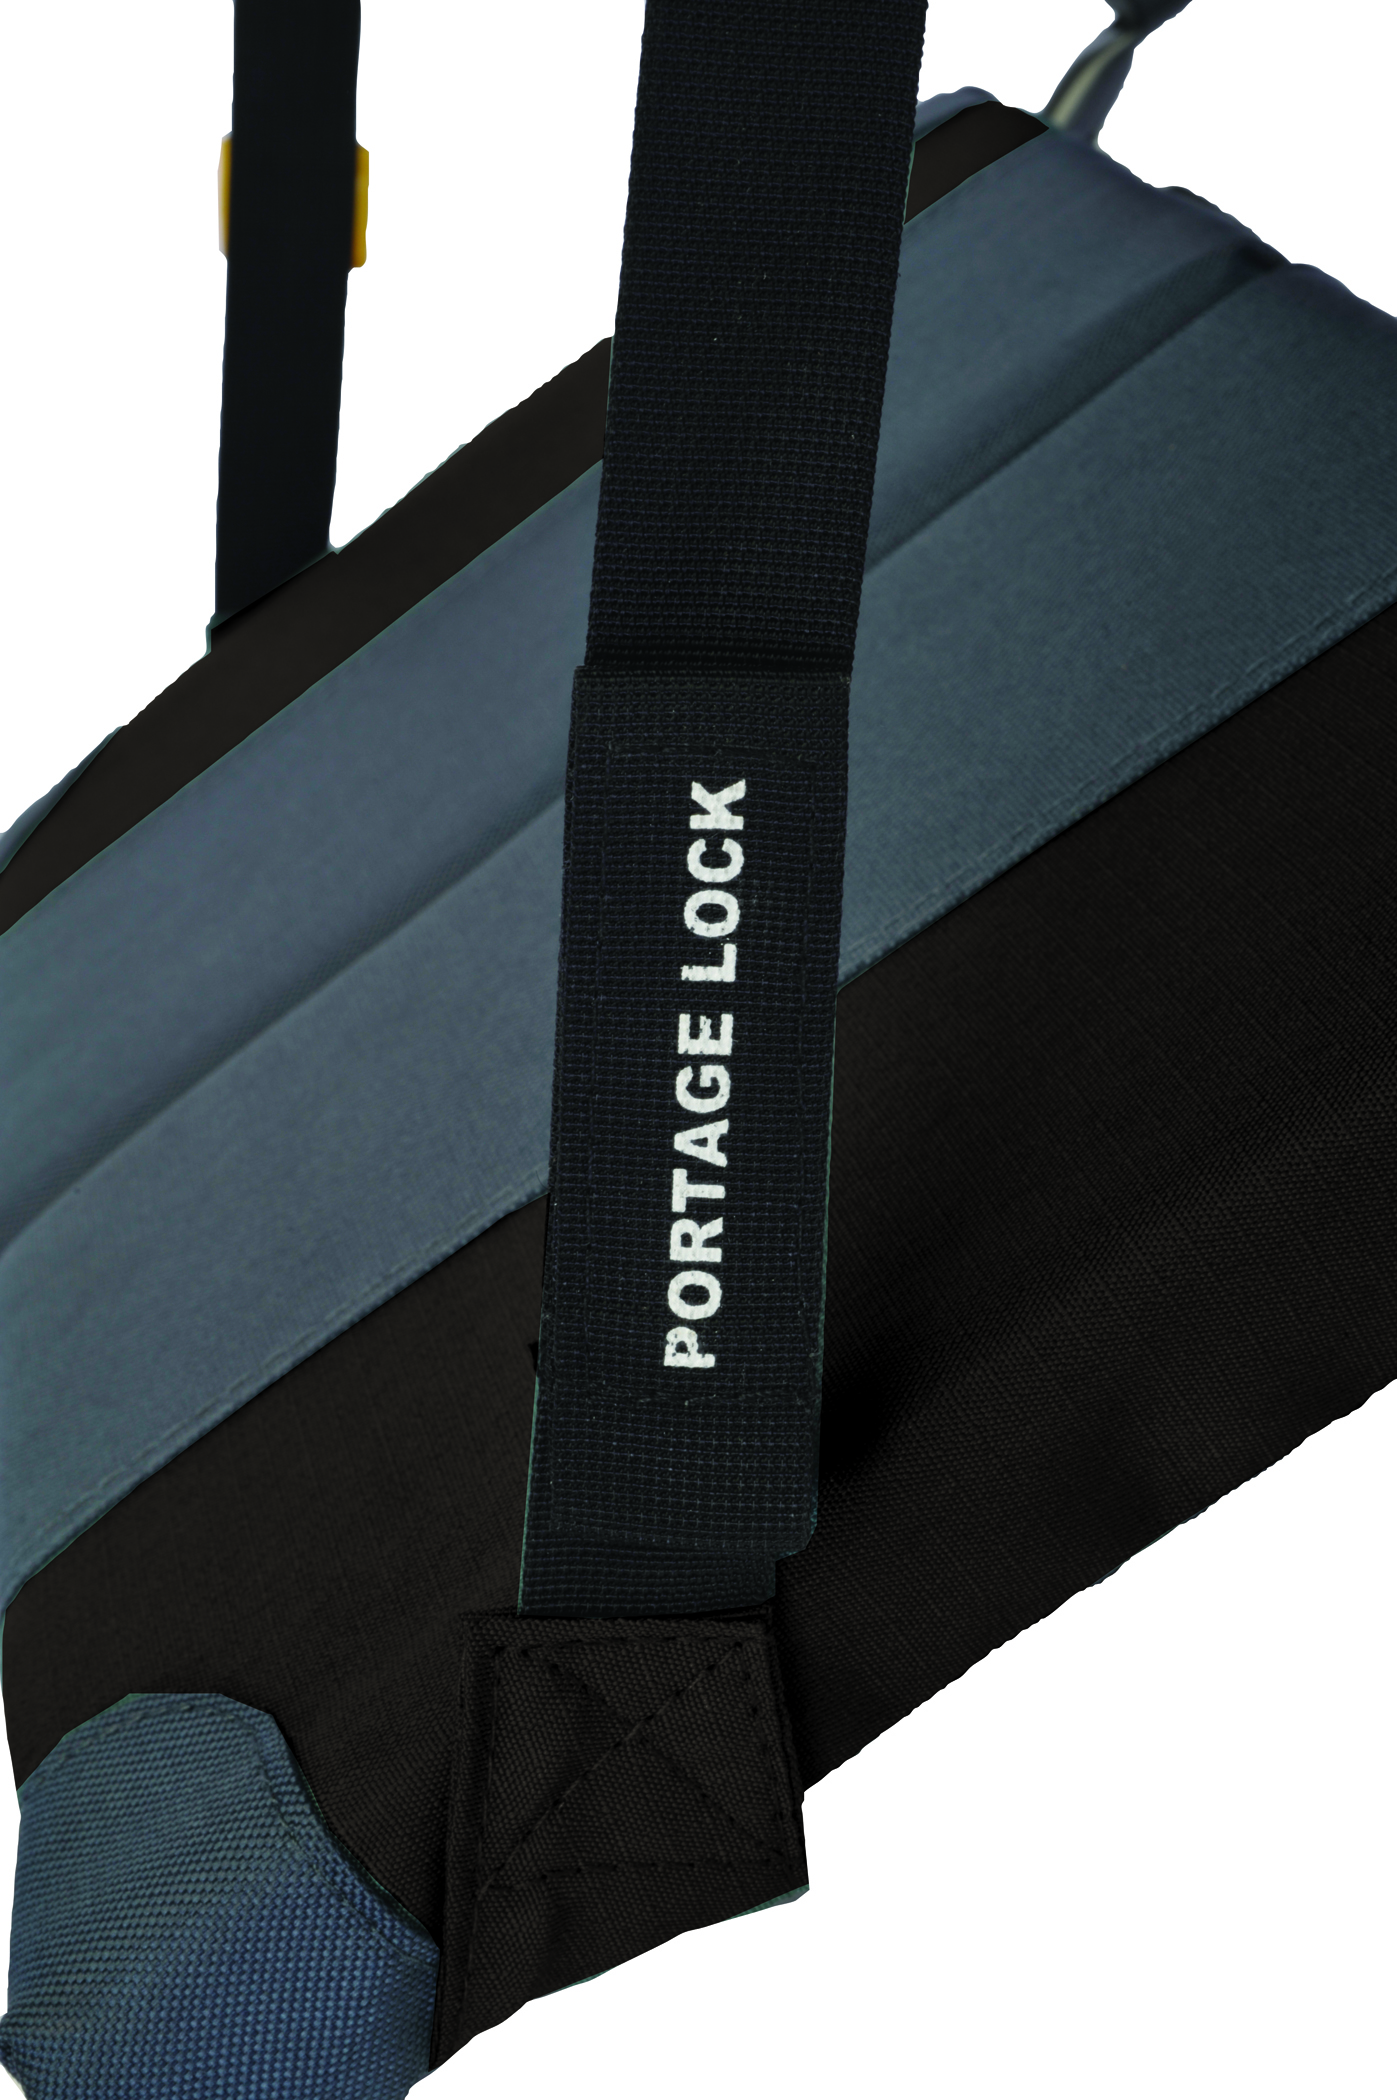 GCI Outdoor SitBacker Folding Cushioned Canoe Seat, Black - image 3 of 3